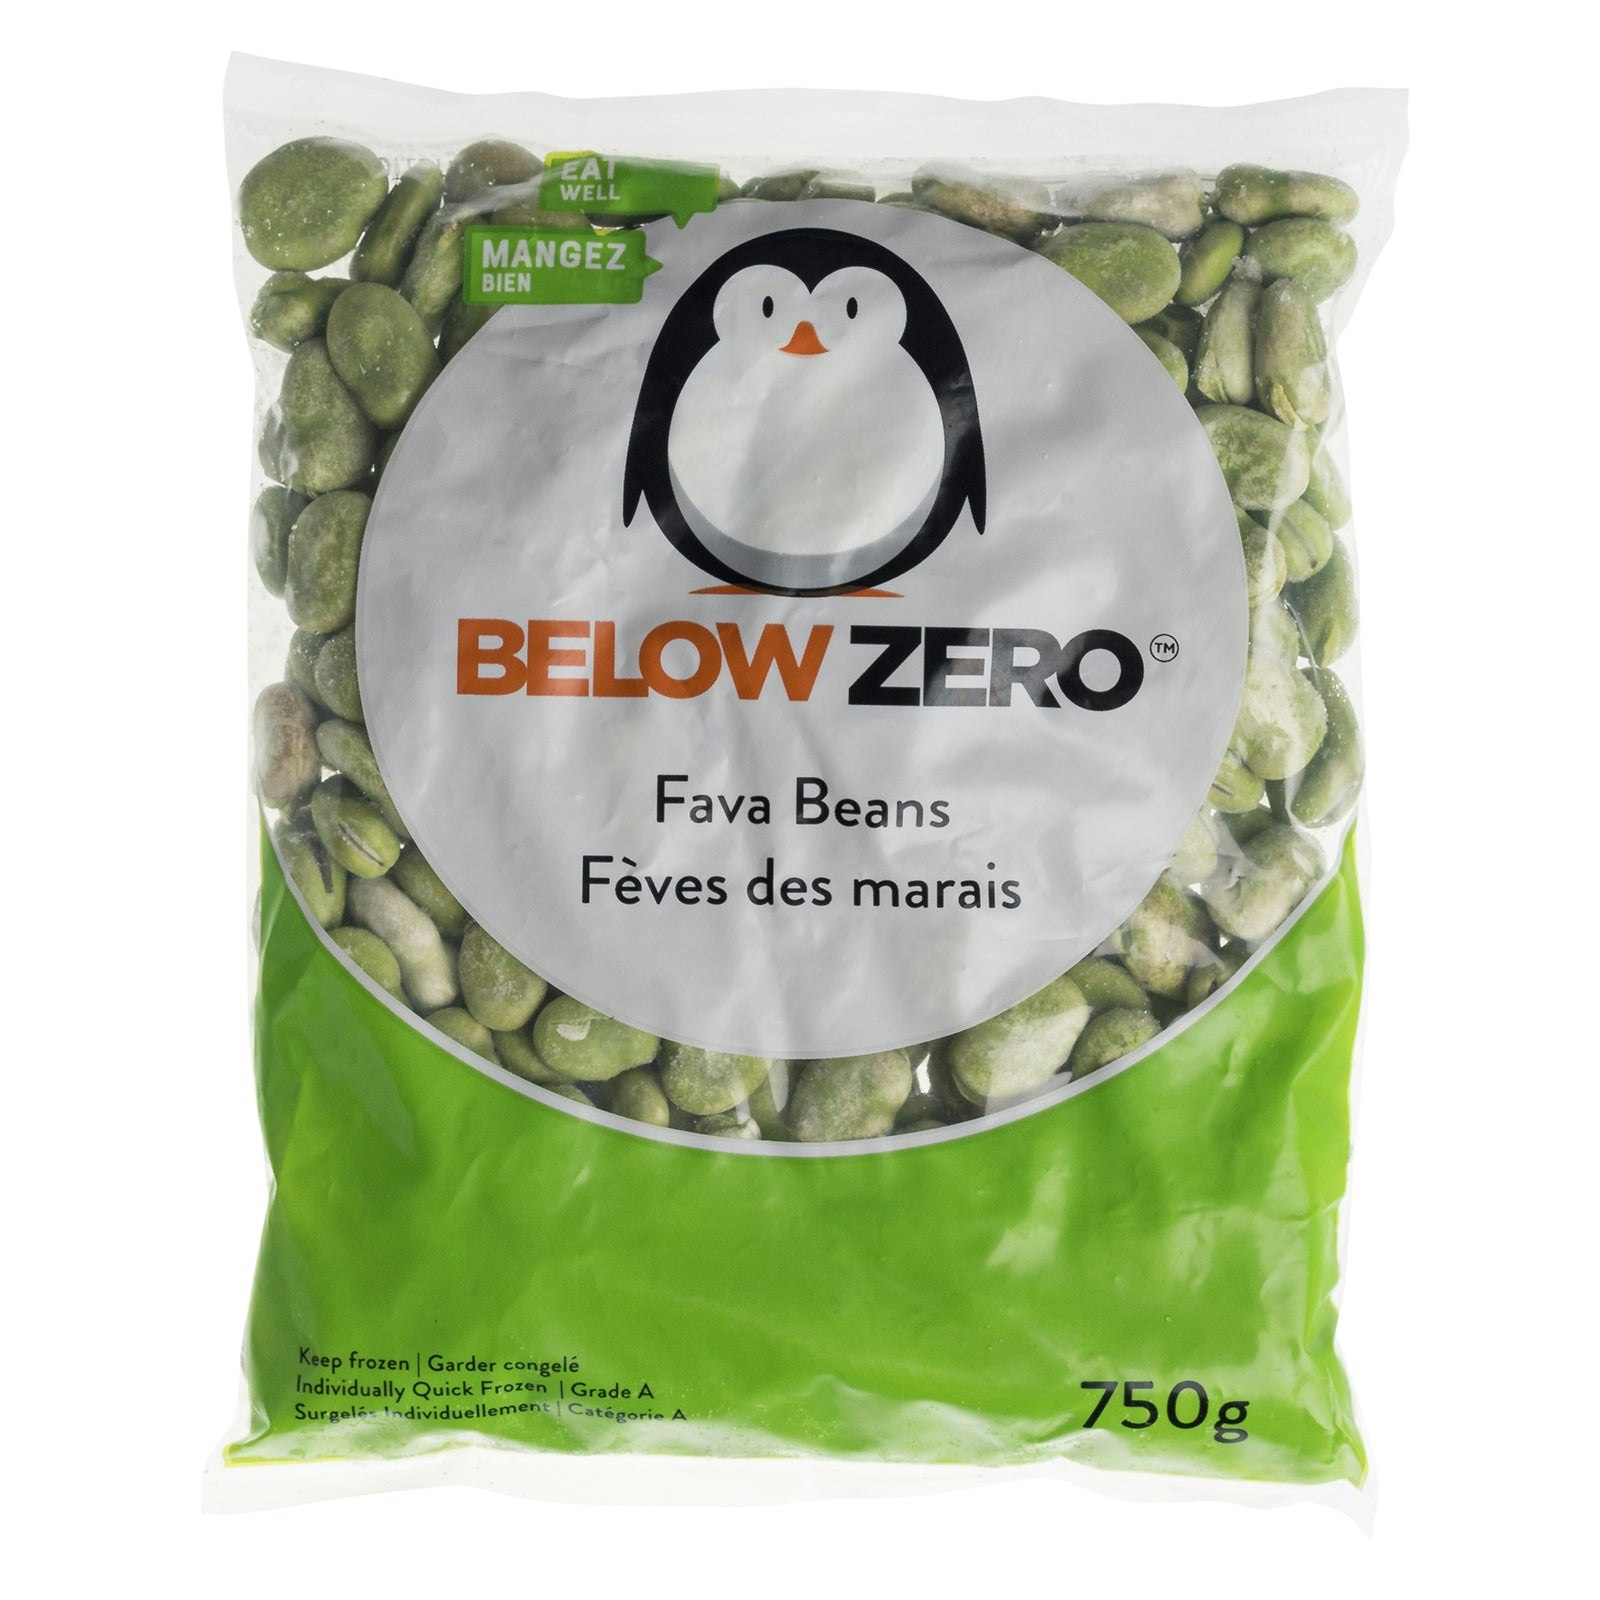 BELOW ZERO Fava Beans